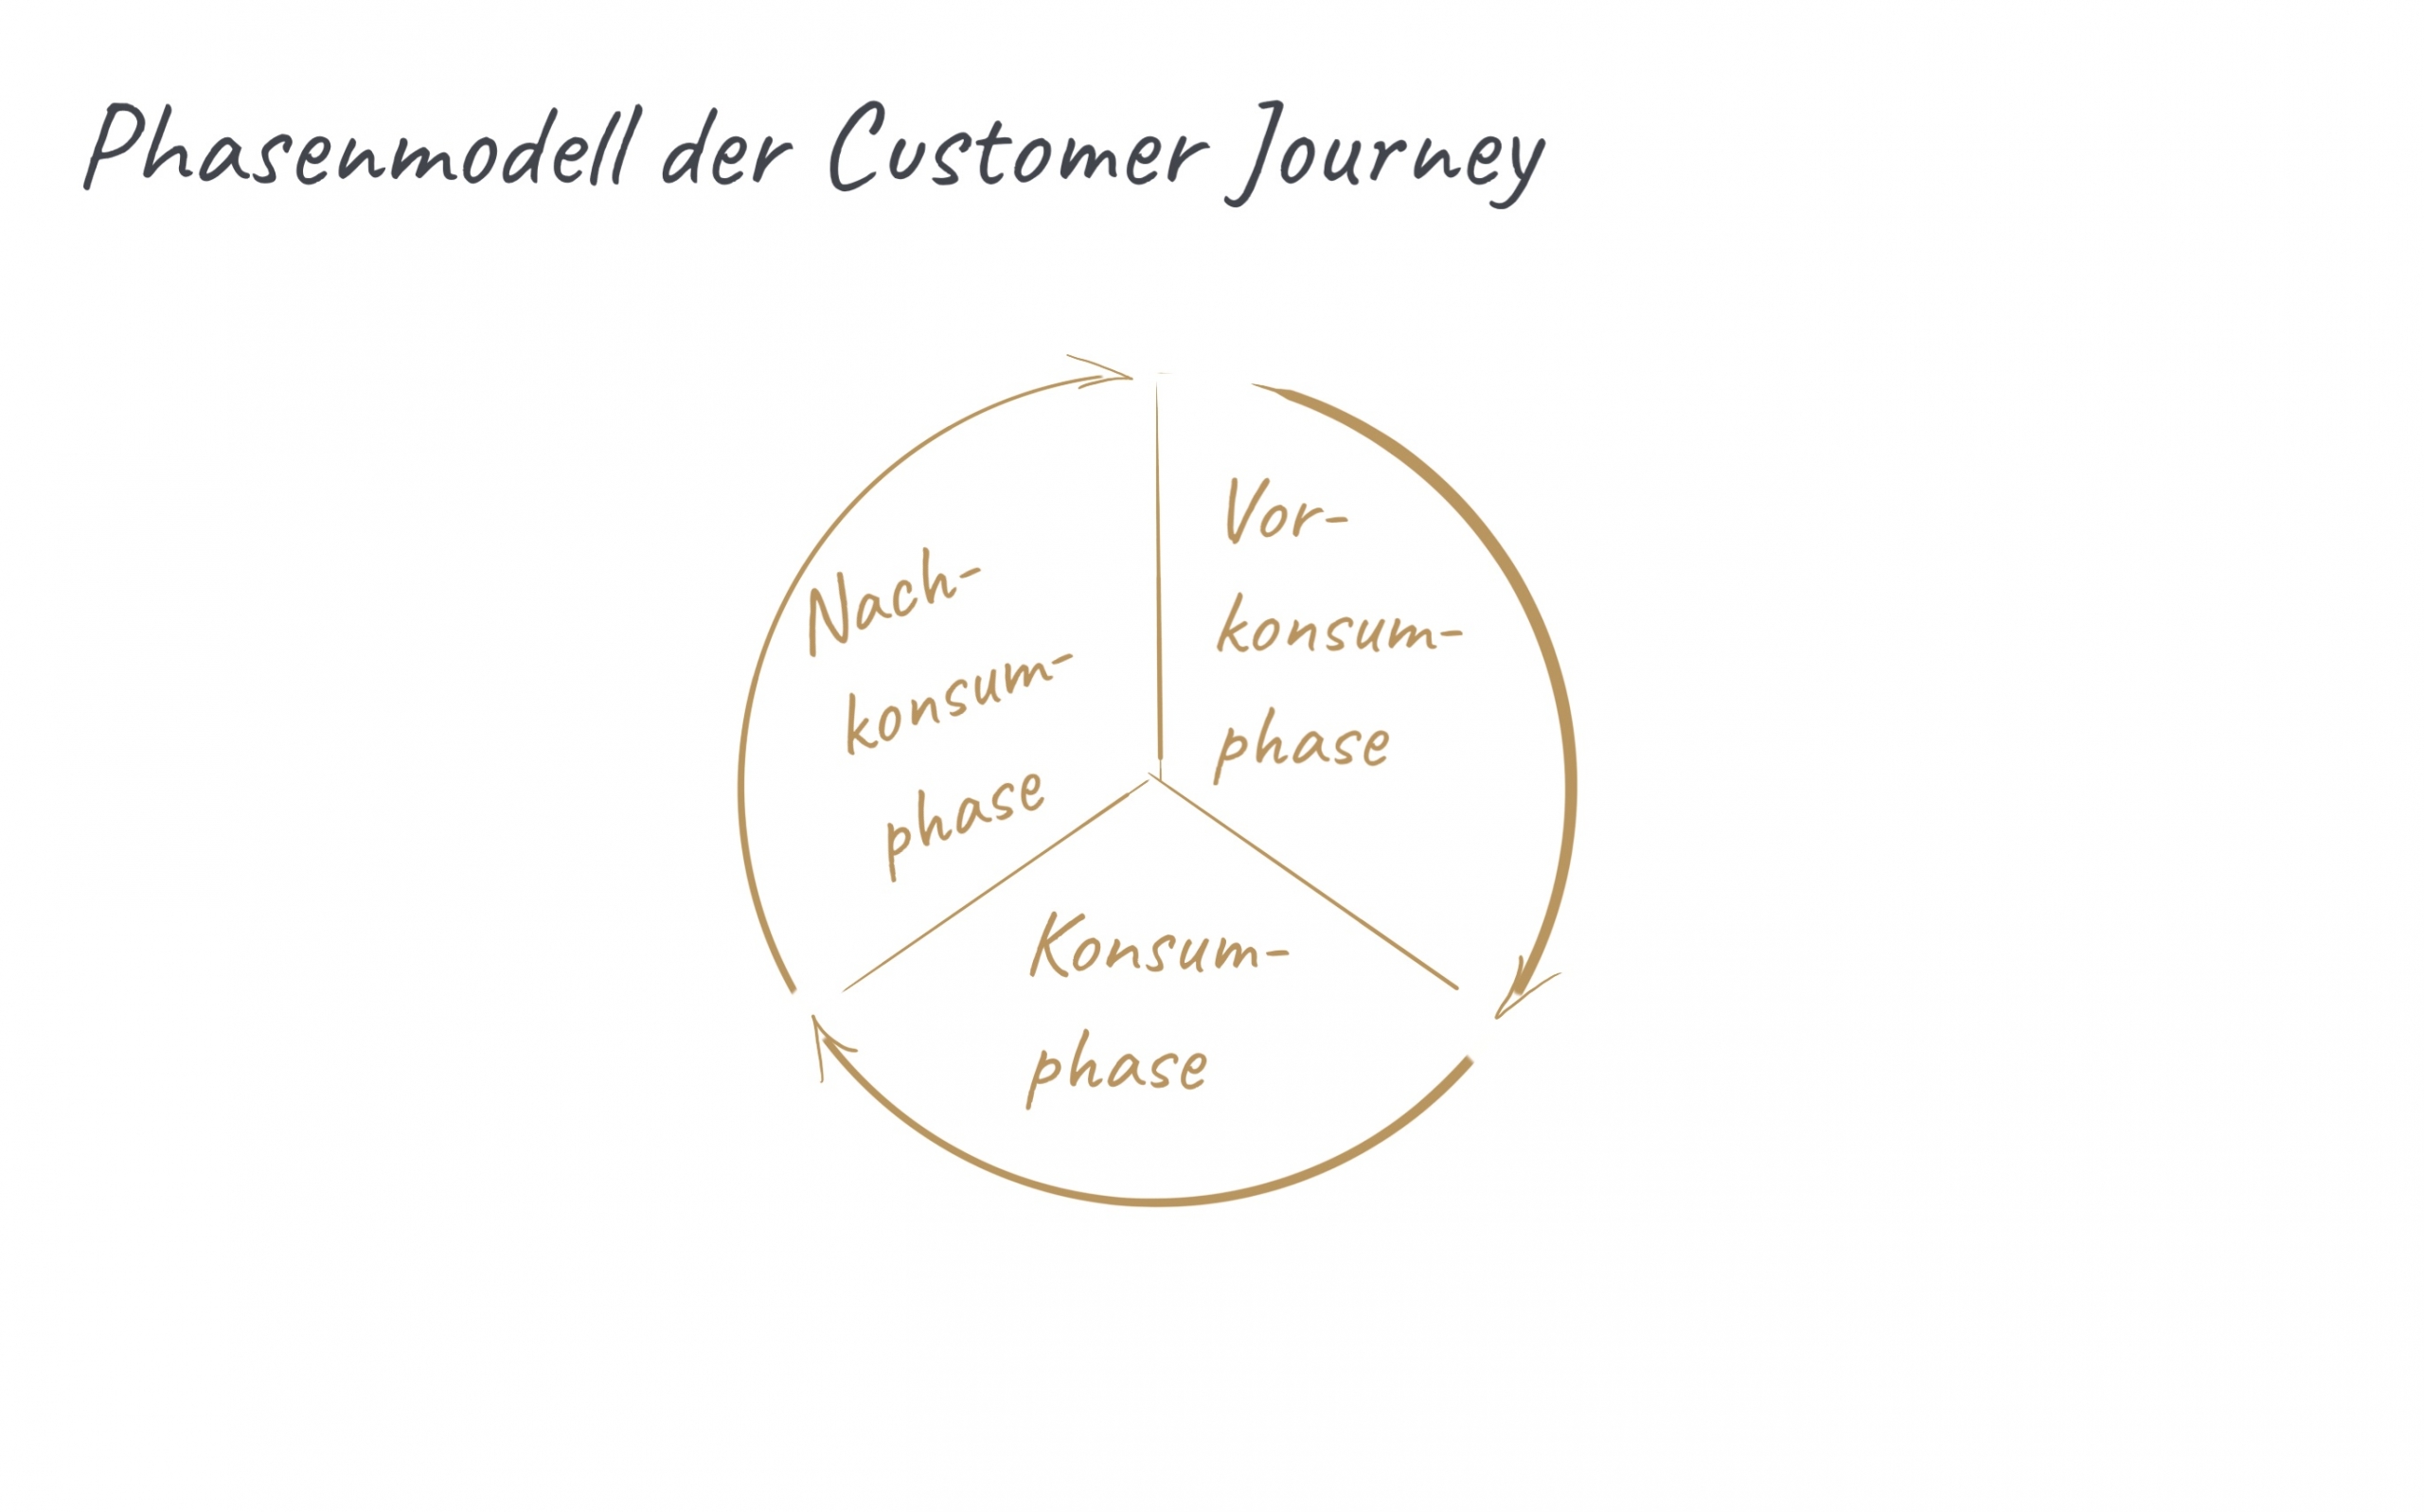 Beschreibung der Phasen der Customer Journey